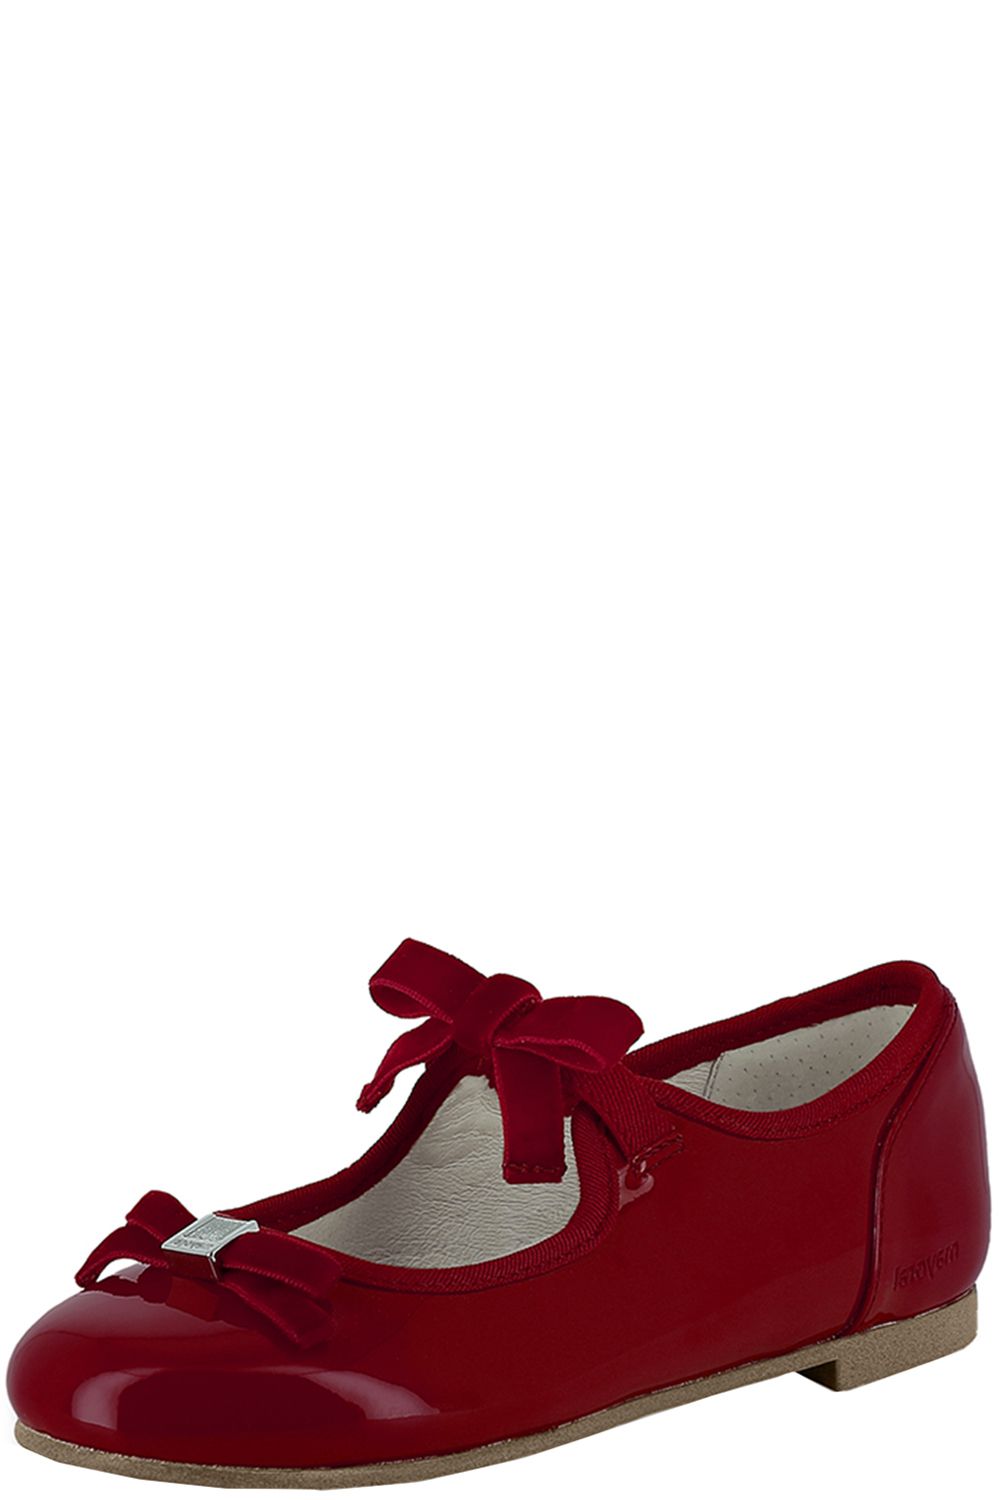 Туфли Mayoral, размер 35, цвет красный 46.111/76 - фото 1